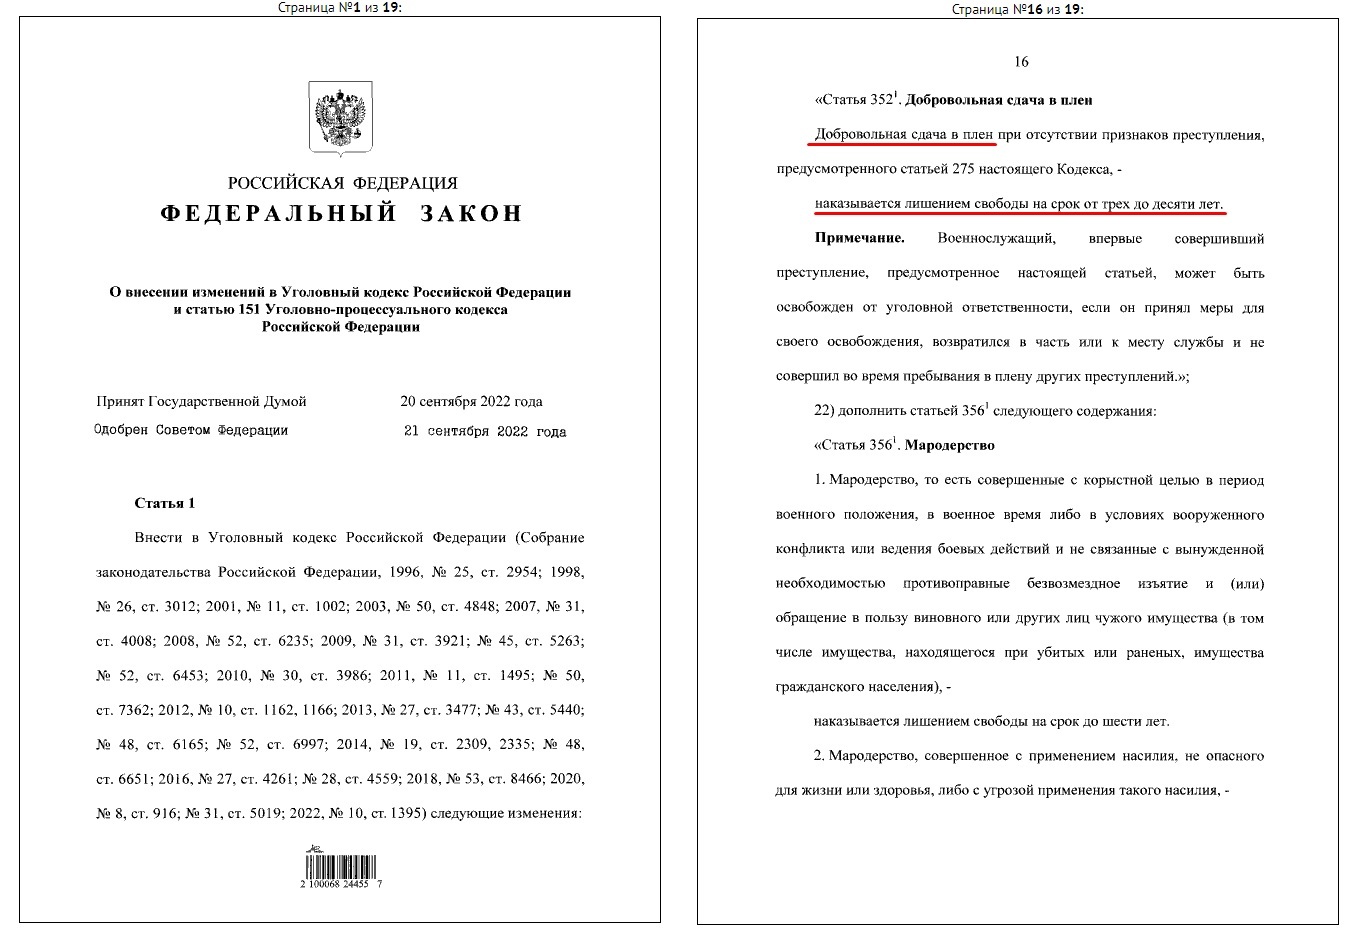 Скріншот з опублікованого російського закону